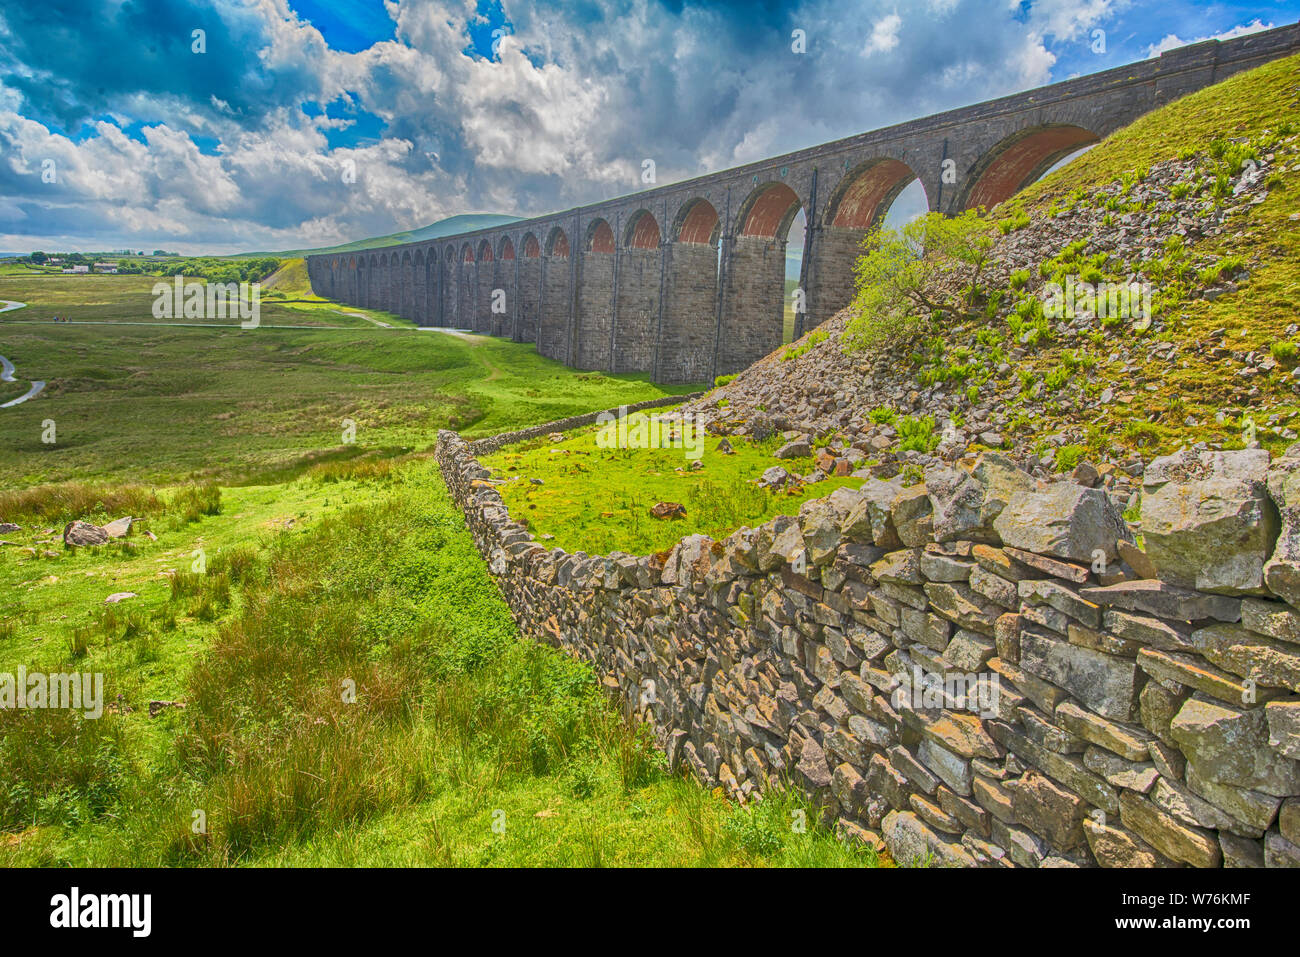 Anzeigen eines grossen alten viktorianischen Eisenbahnviadukt über Tal in ländlichen Landschaft Landschaft Panorama mit Steinmauer Stockfoto